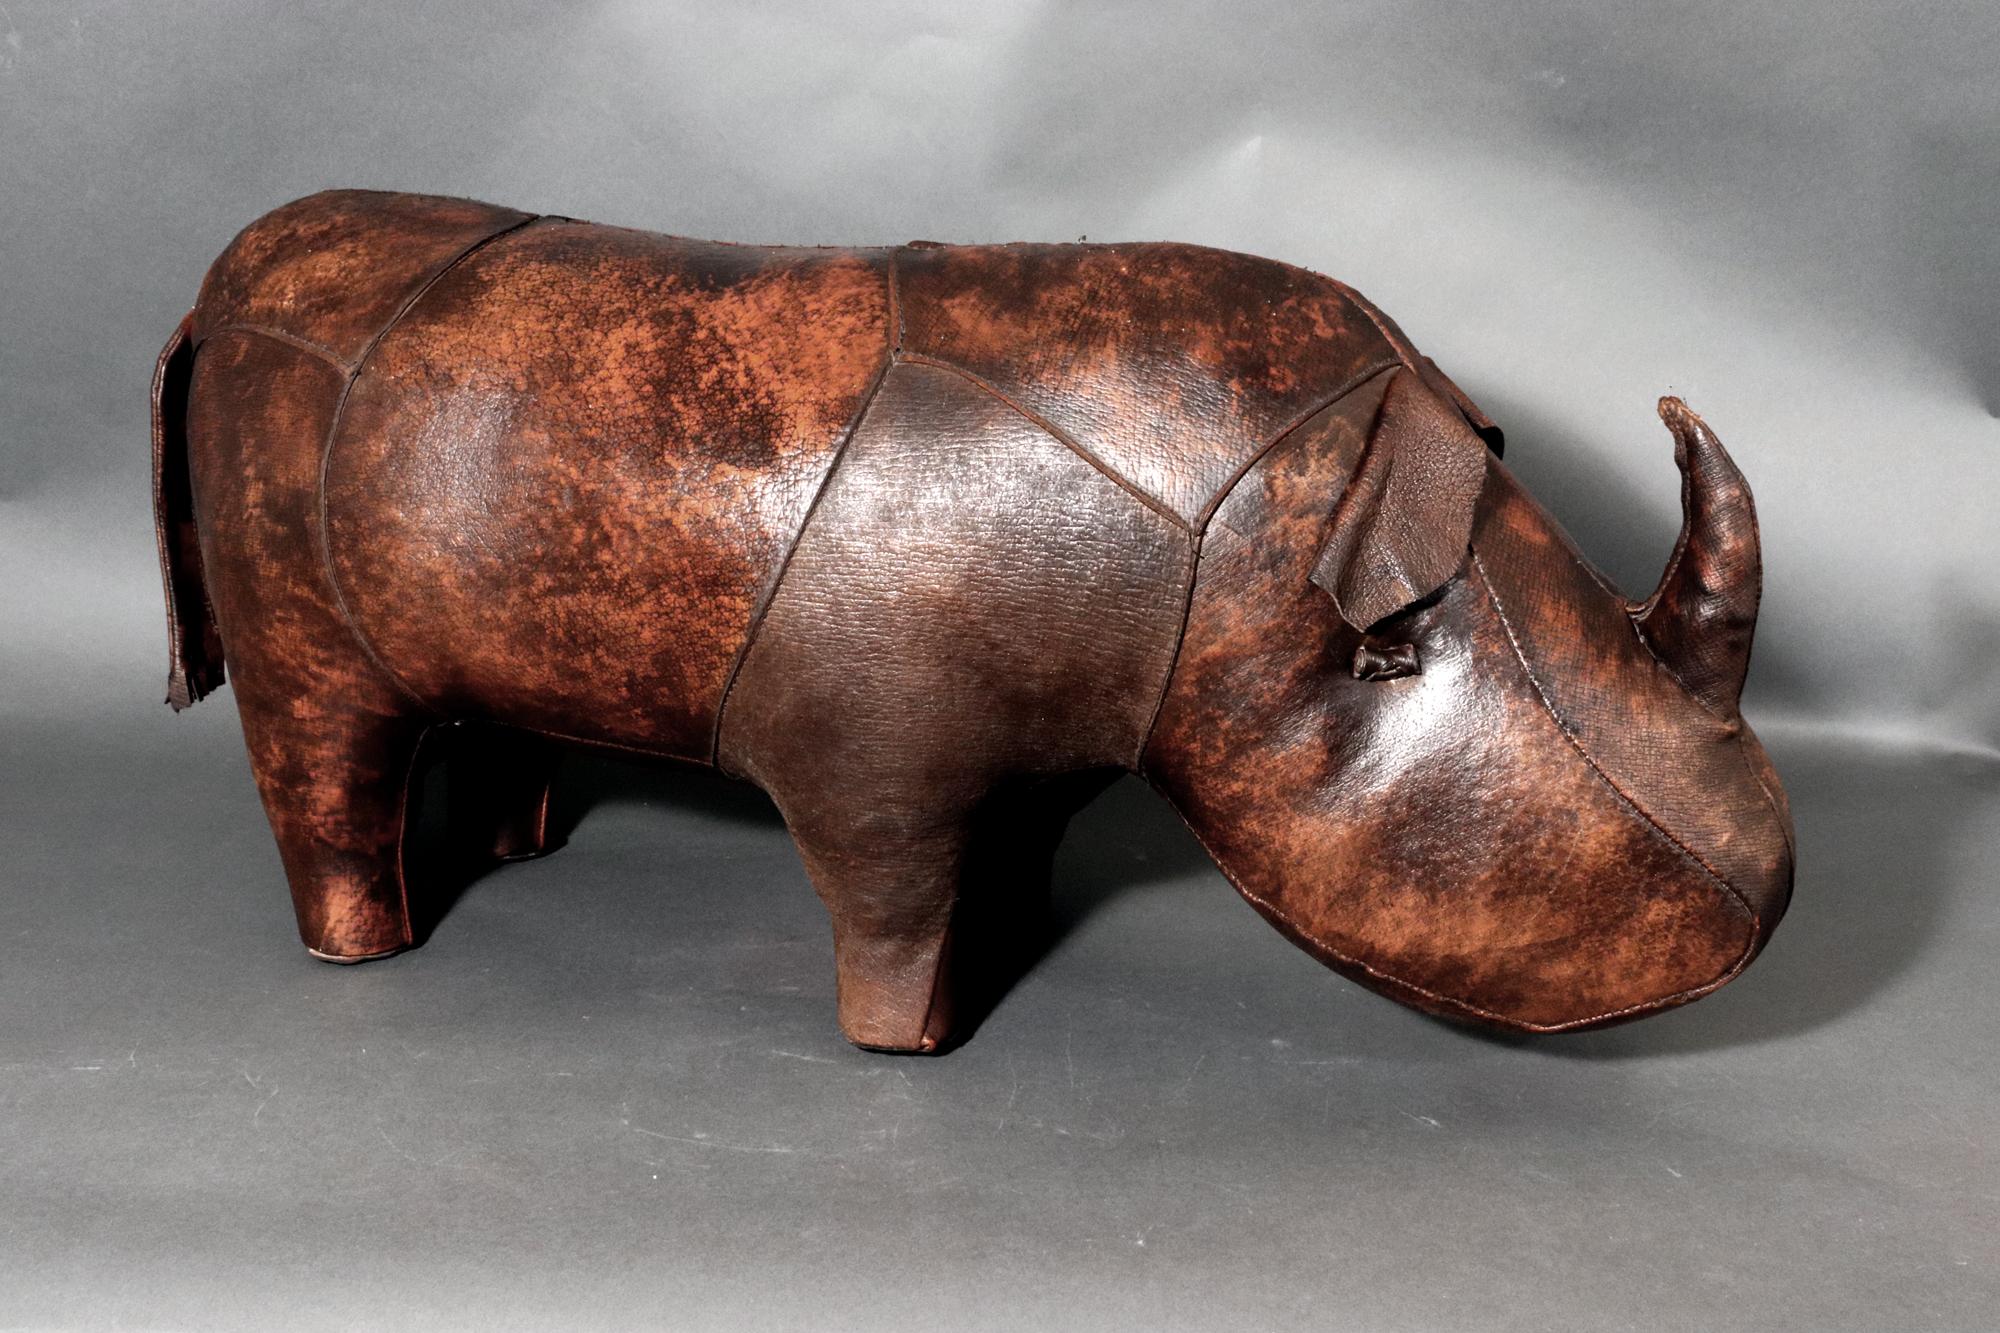 Tabouret ou pouf Rhino en cuir vintage de MCM,
Les années 1960-70

Le pouf ou ottoman en cuir du milieu du siècle est conçu en forme de rhinocéros dans un beau cuir foncé.

Dimensions : 12 1/2 pouces de haut x 29 pouces de long x 9 pouces de large